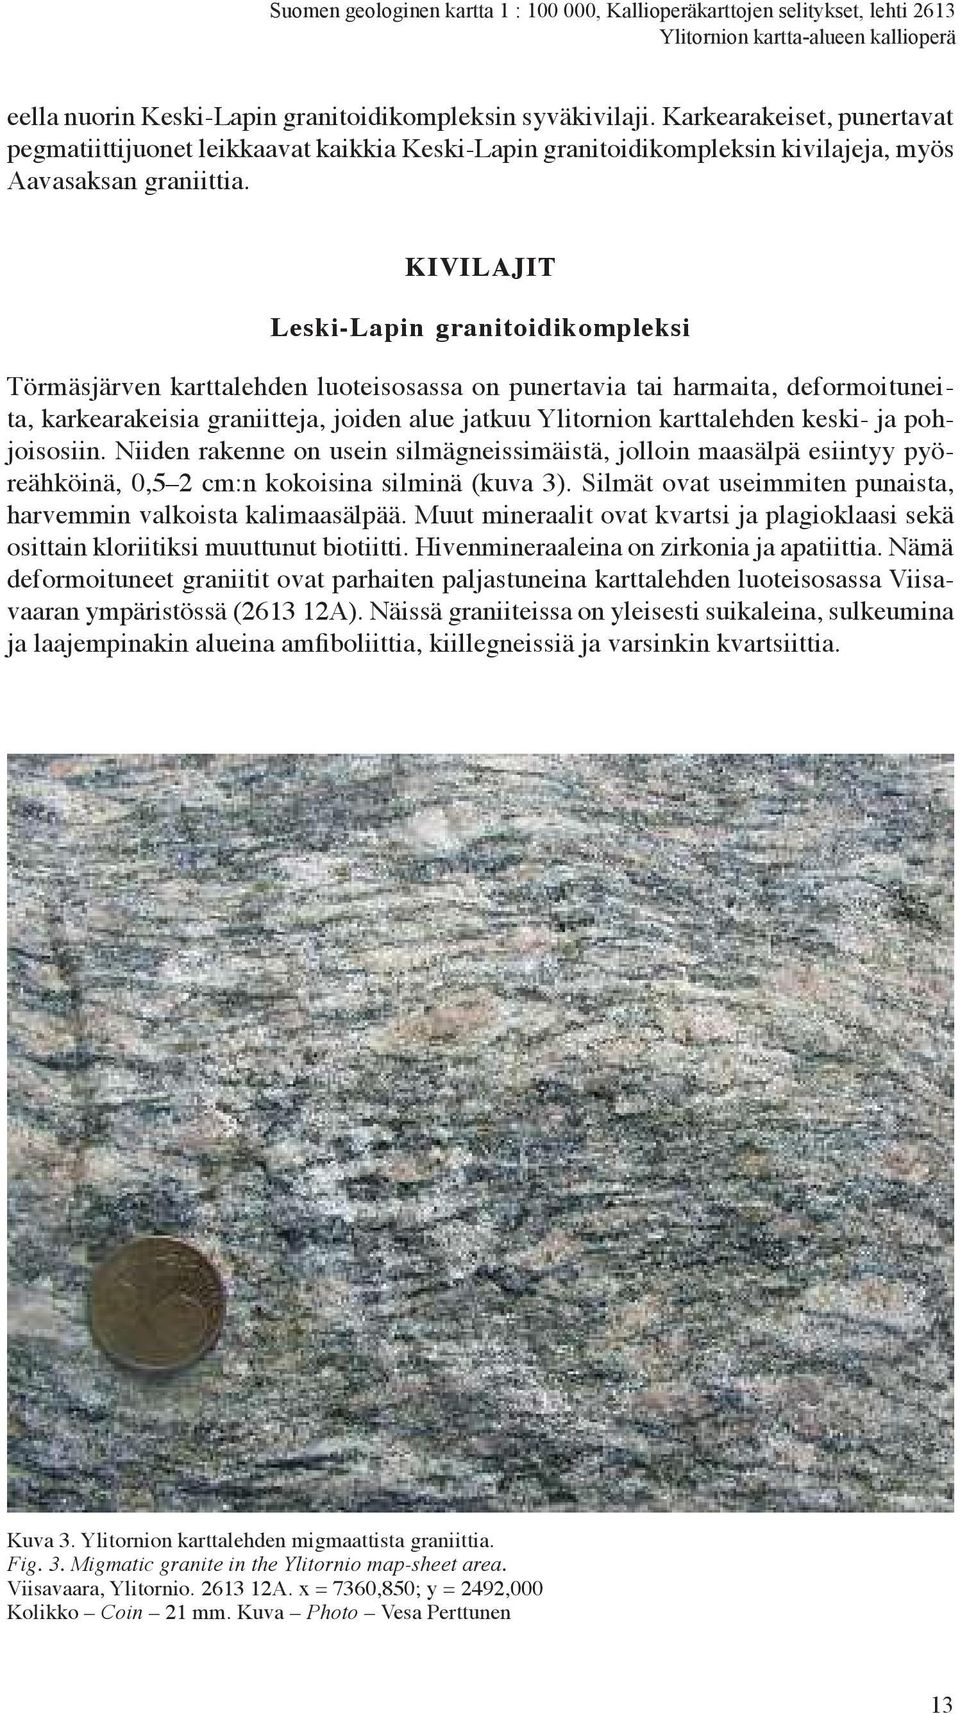 KiVilAJit leski-lapin granitoidikompleksi Törmäsjärven karttalehden luoteisosassa on punertavia tai harmaita, deformoituneita, karkearakeisia graniitteja, joiden alue jatkuu Ylitornion karttalehden